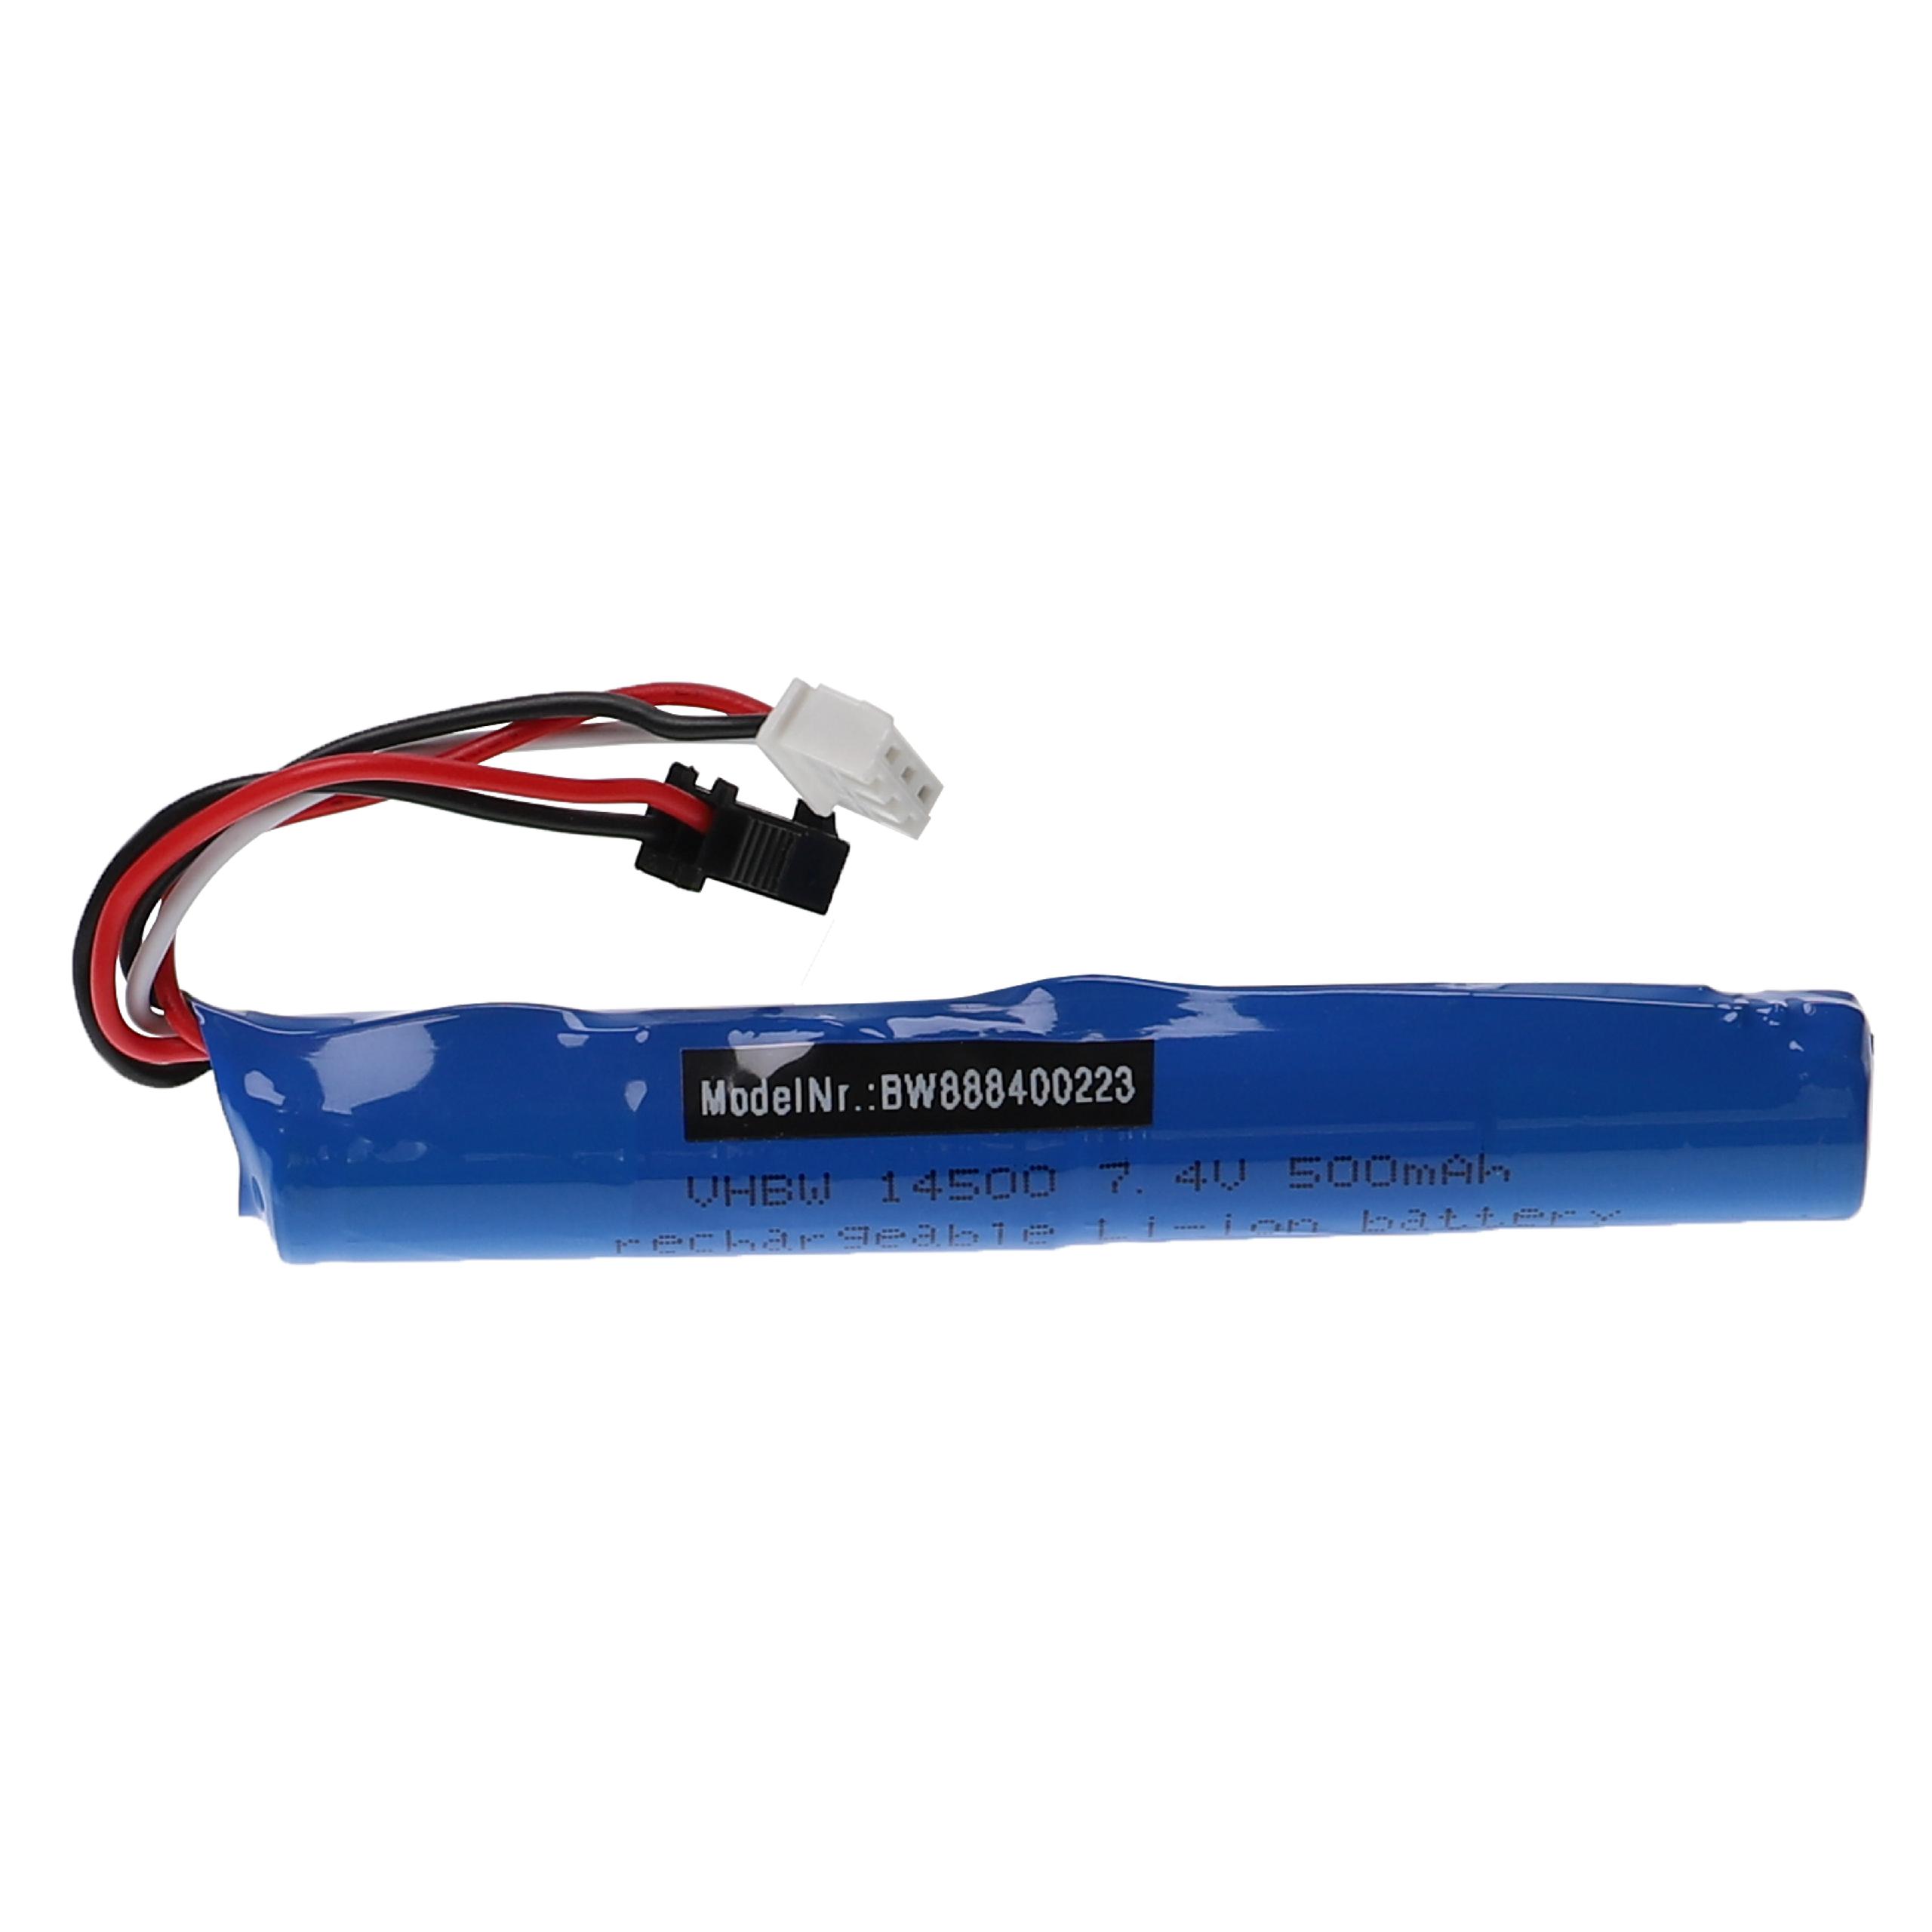 Vhbw Batterie compatible avec SM-2P connecteur pour modéle RC par ex.  voiture de course avion (500mAh, 7,4V, Li-ion, 101 x 14,3 mm)